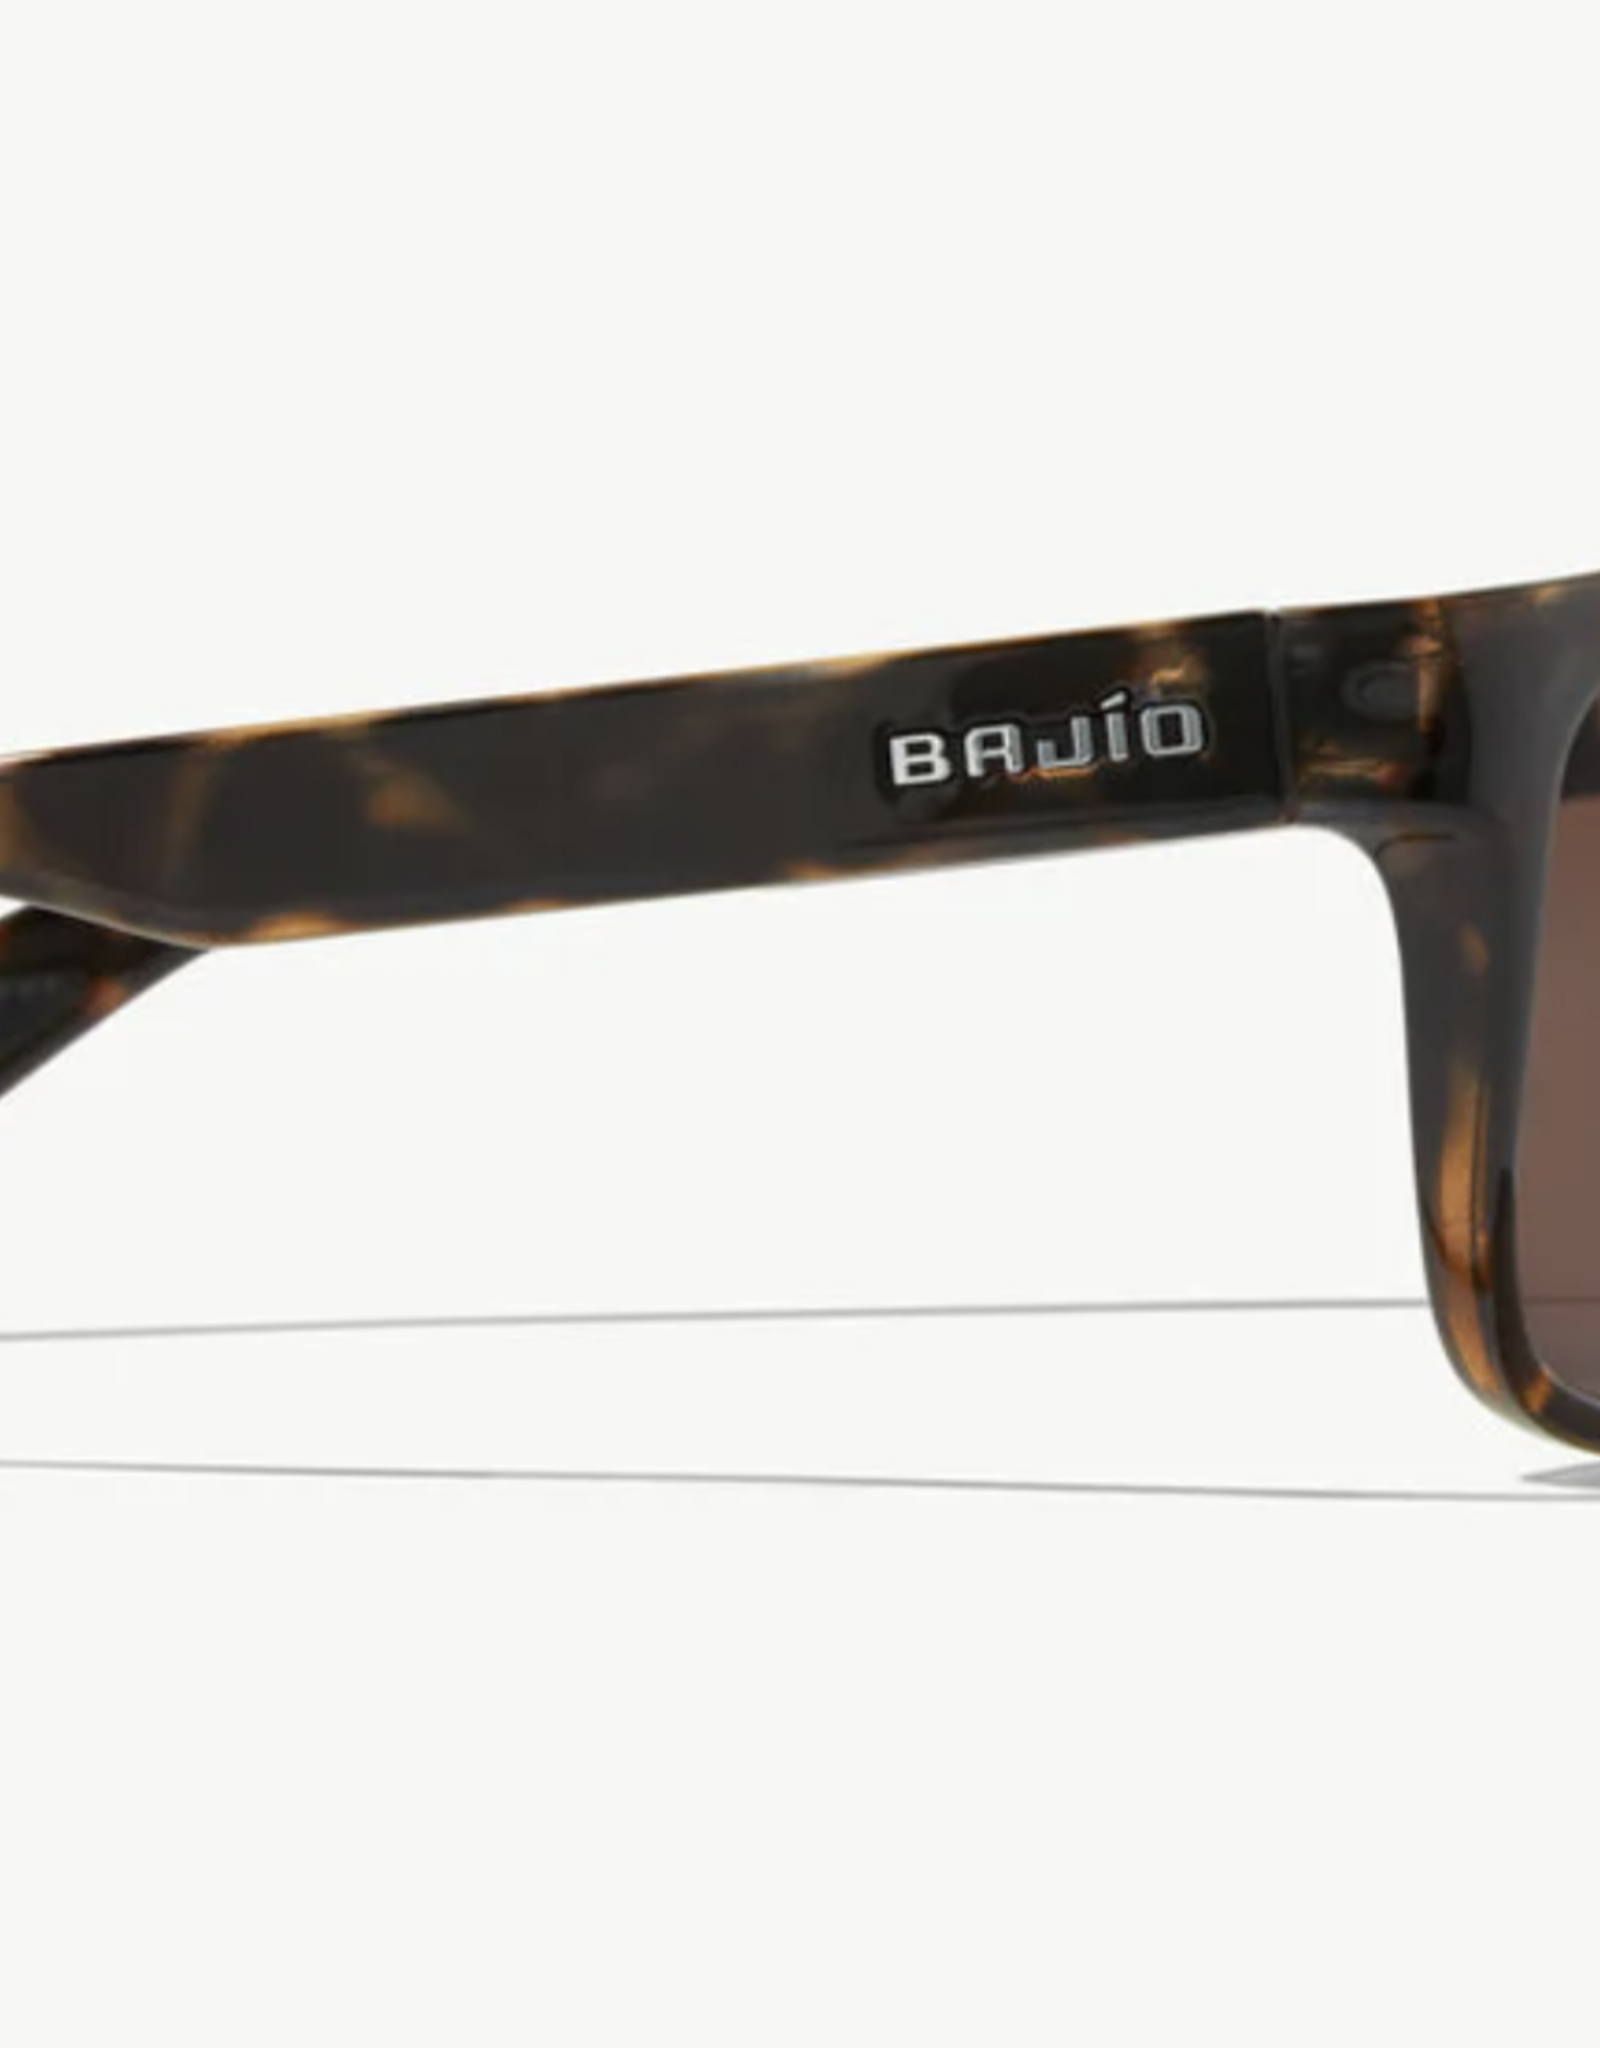 Bajio Bajio Swash Sunglasses